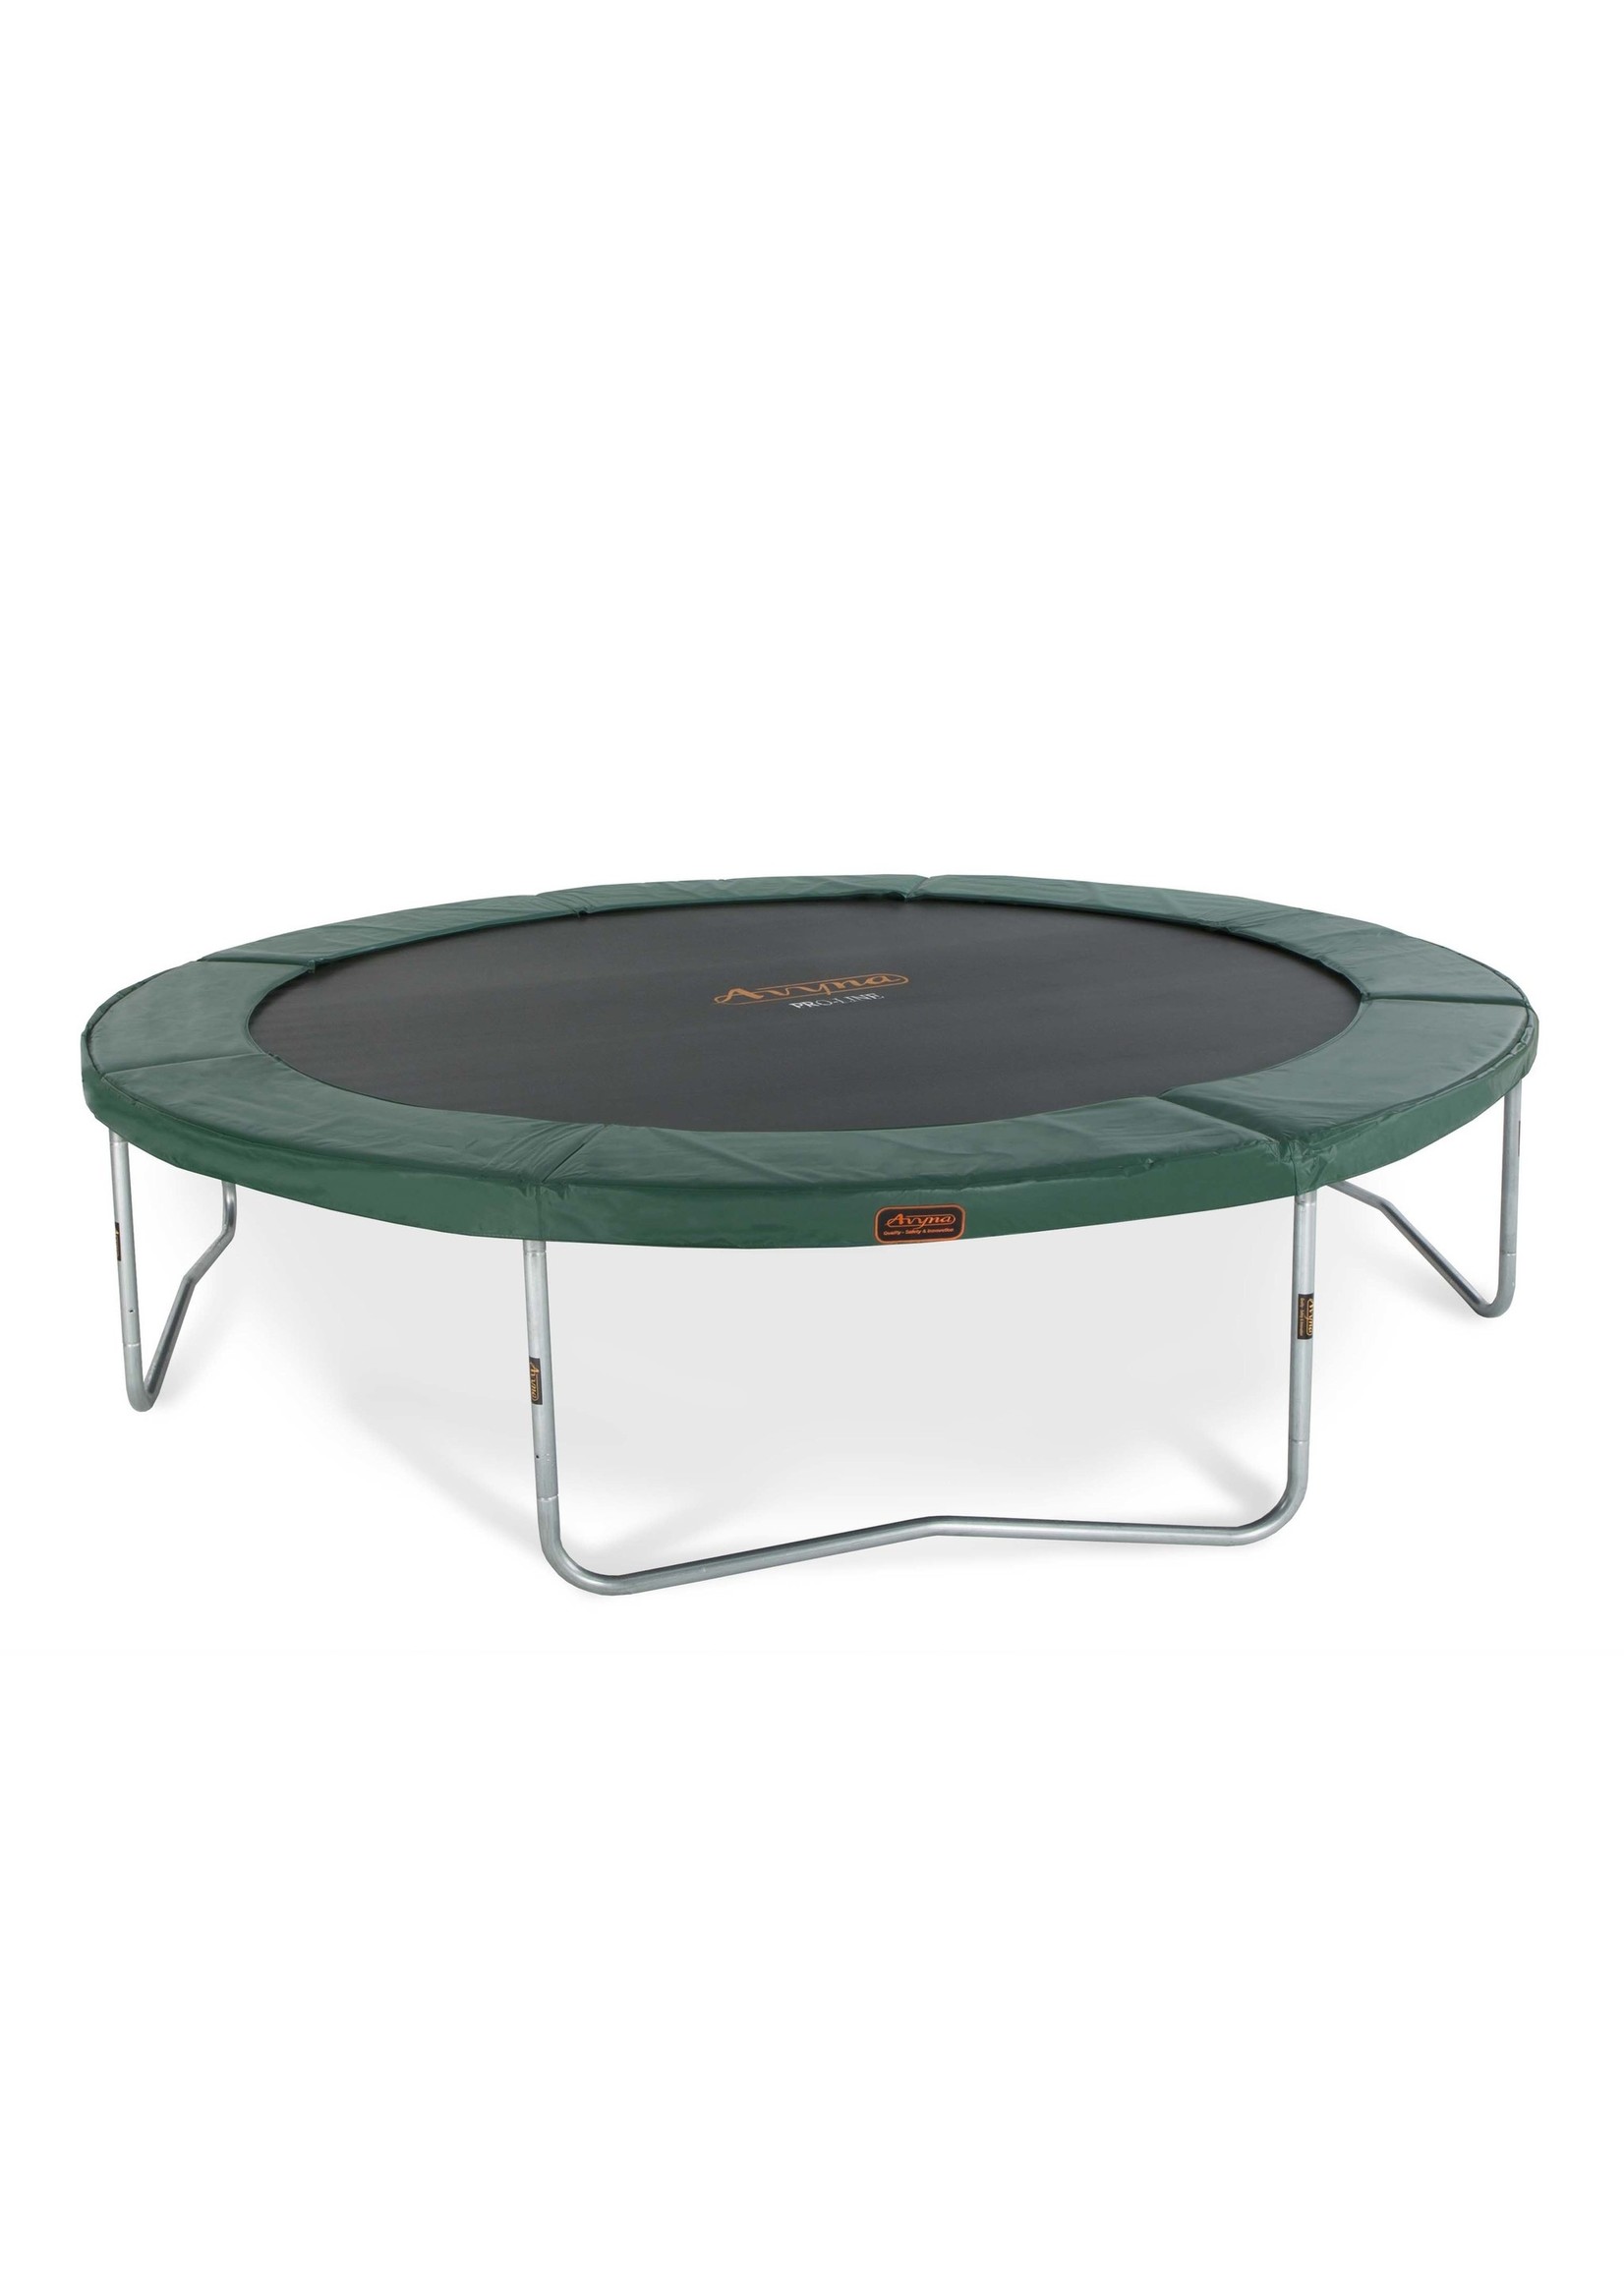 Avyna Ronde trampoline | Avyna Pro-Line ‚àö√≤ 365 cm